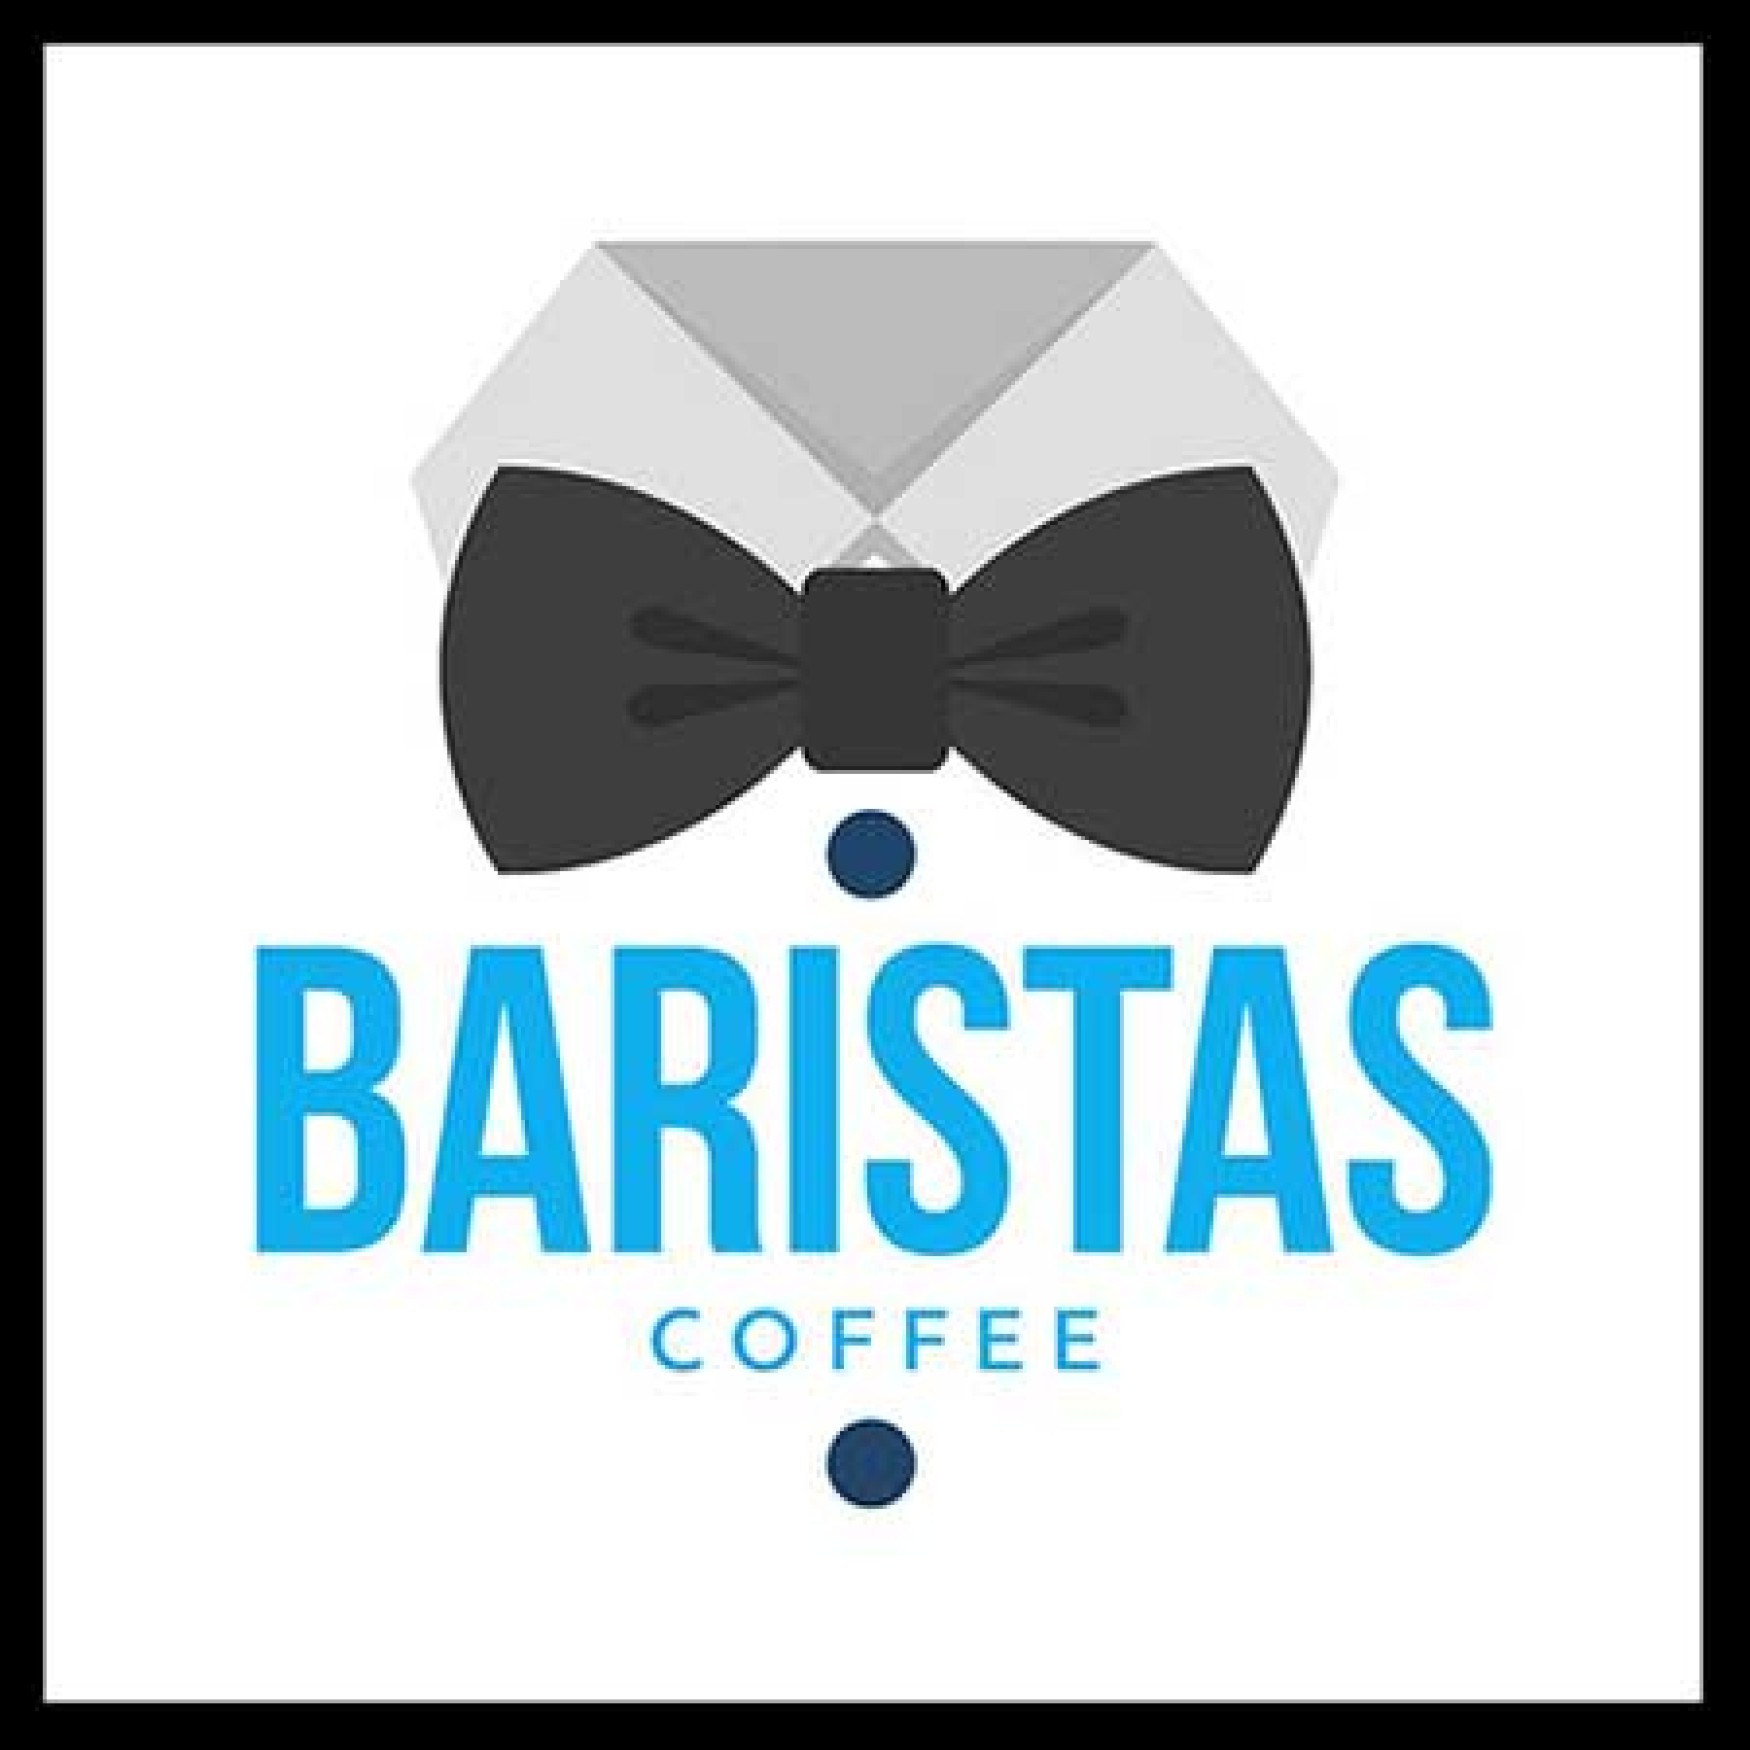 BARISTAS COFFEE